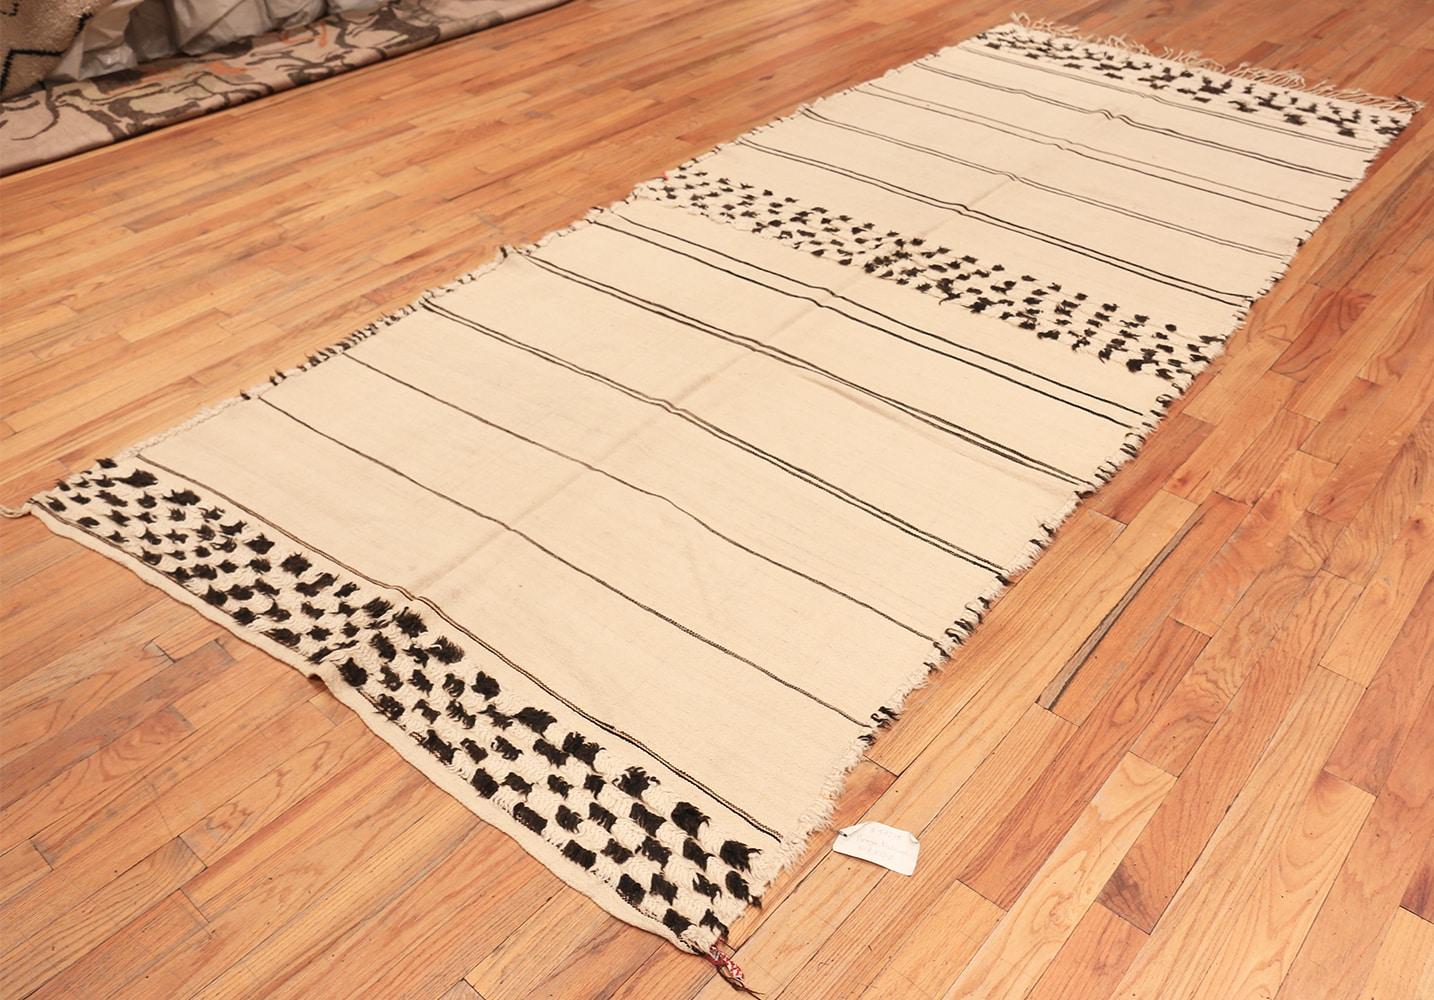 Magnifique tapis marocain vintage ivoire et noir, d'origine marocaine : Maroc, vers le milieu du 20e siècle. Taille : 5 ft 7 in x 12 ft 2 in (1,7 m x 3,71 m). Ce magnifique tapis simple provient du Maroc du milieu du XXe siècle, mais il aurait tout